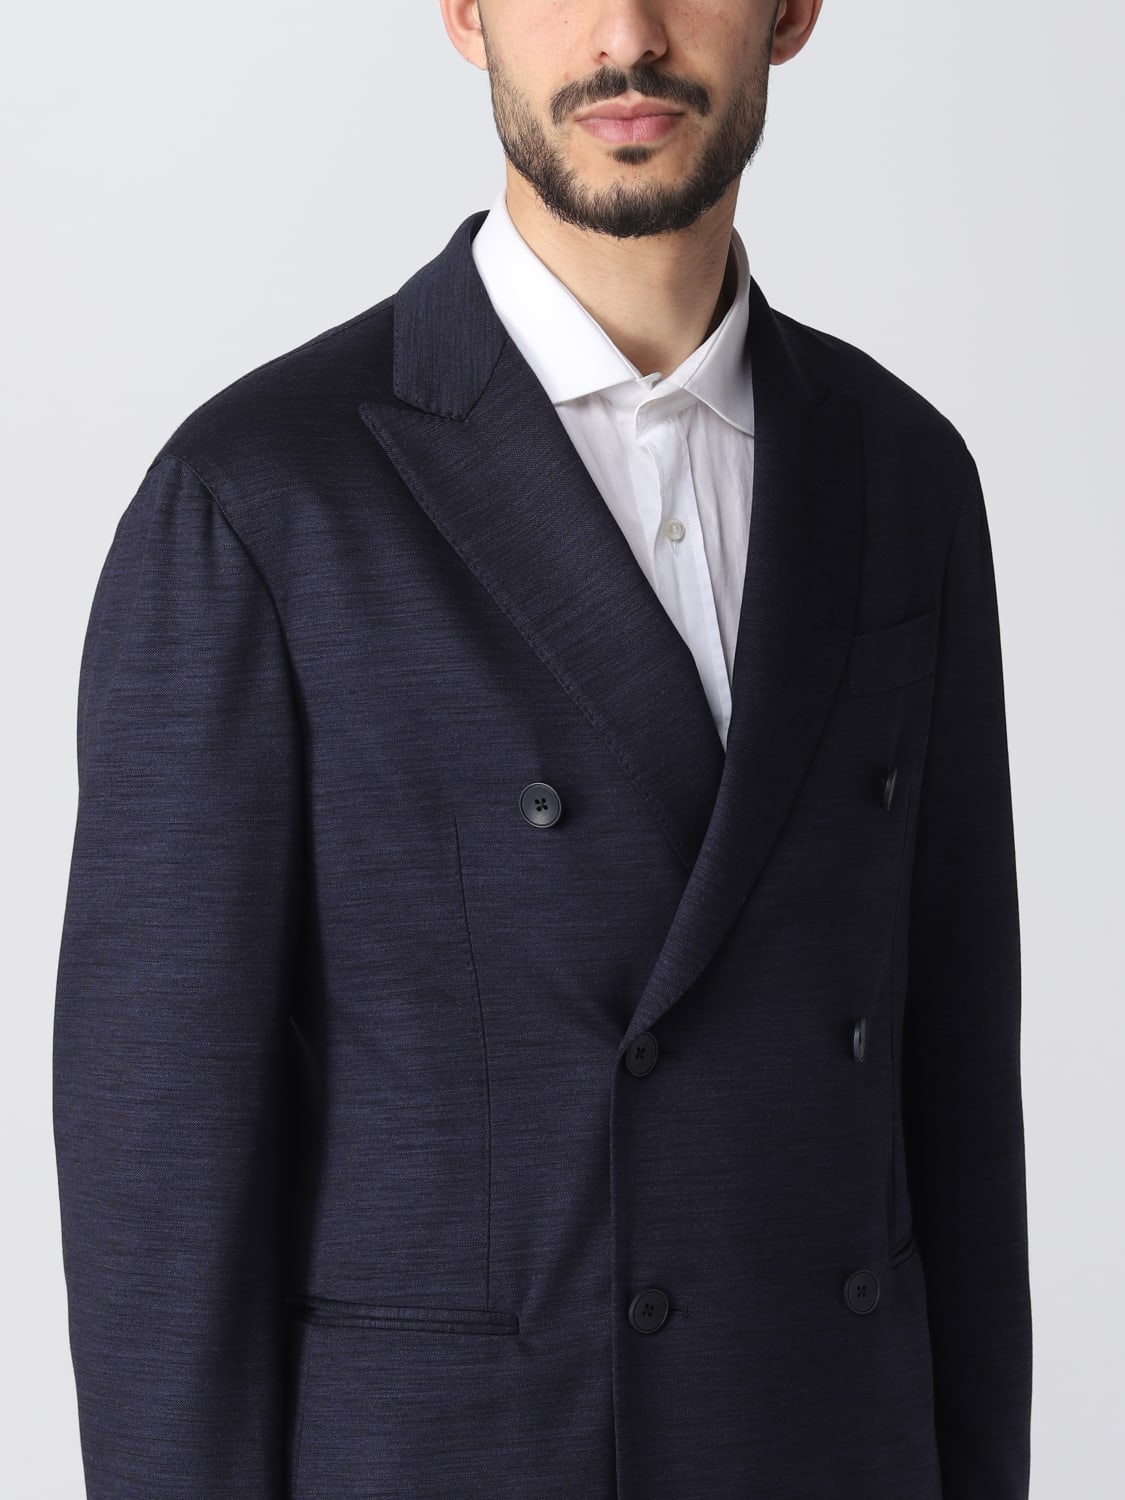 EMPORIO ARMANI: suit for man - Blue | Emporio Armani suit D41VC6D1093 ...